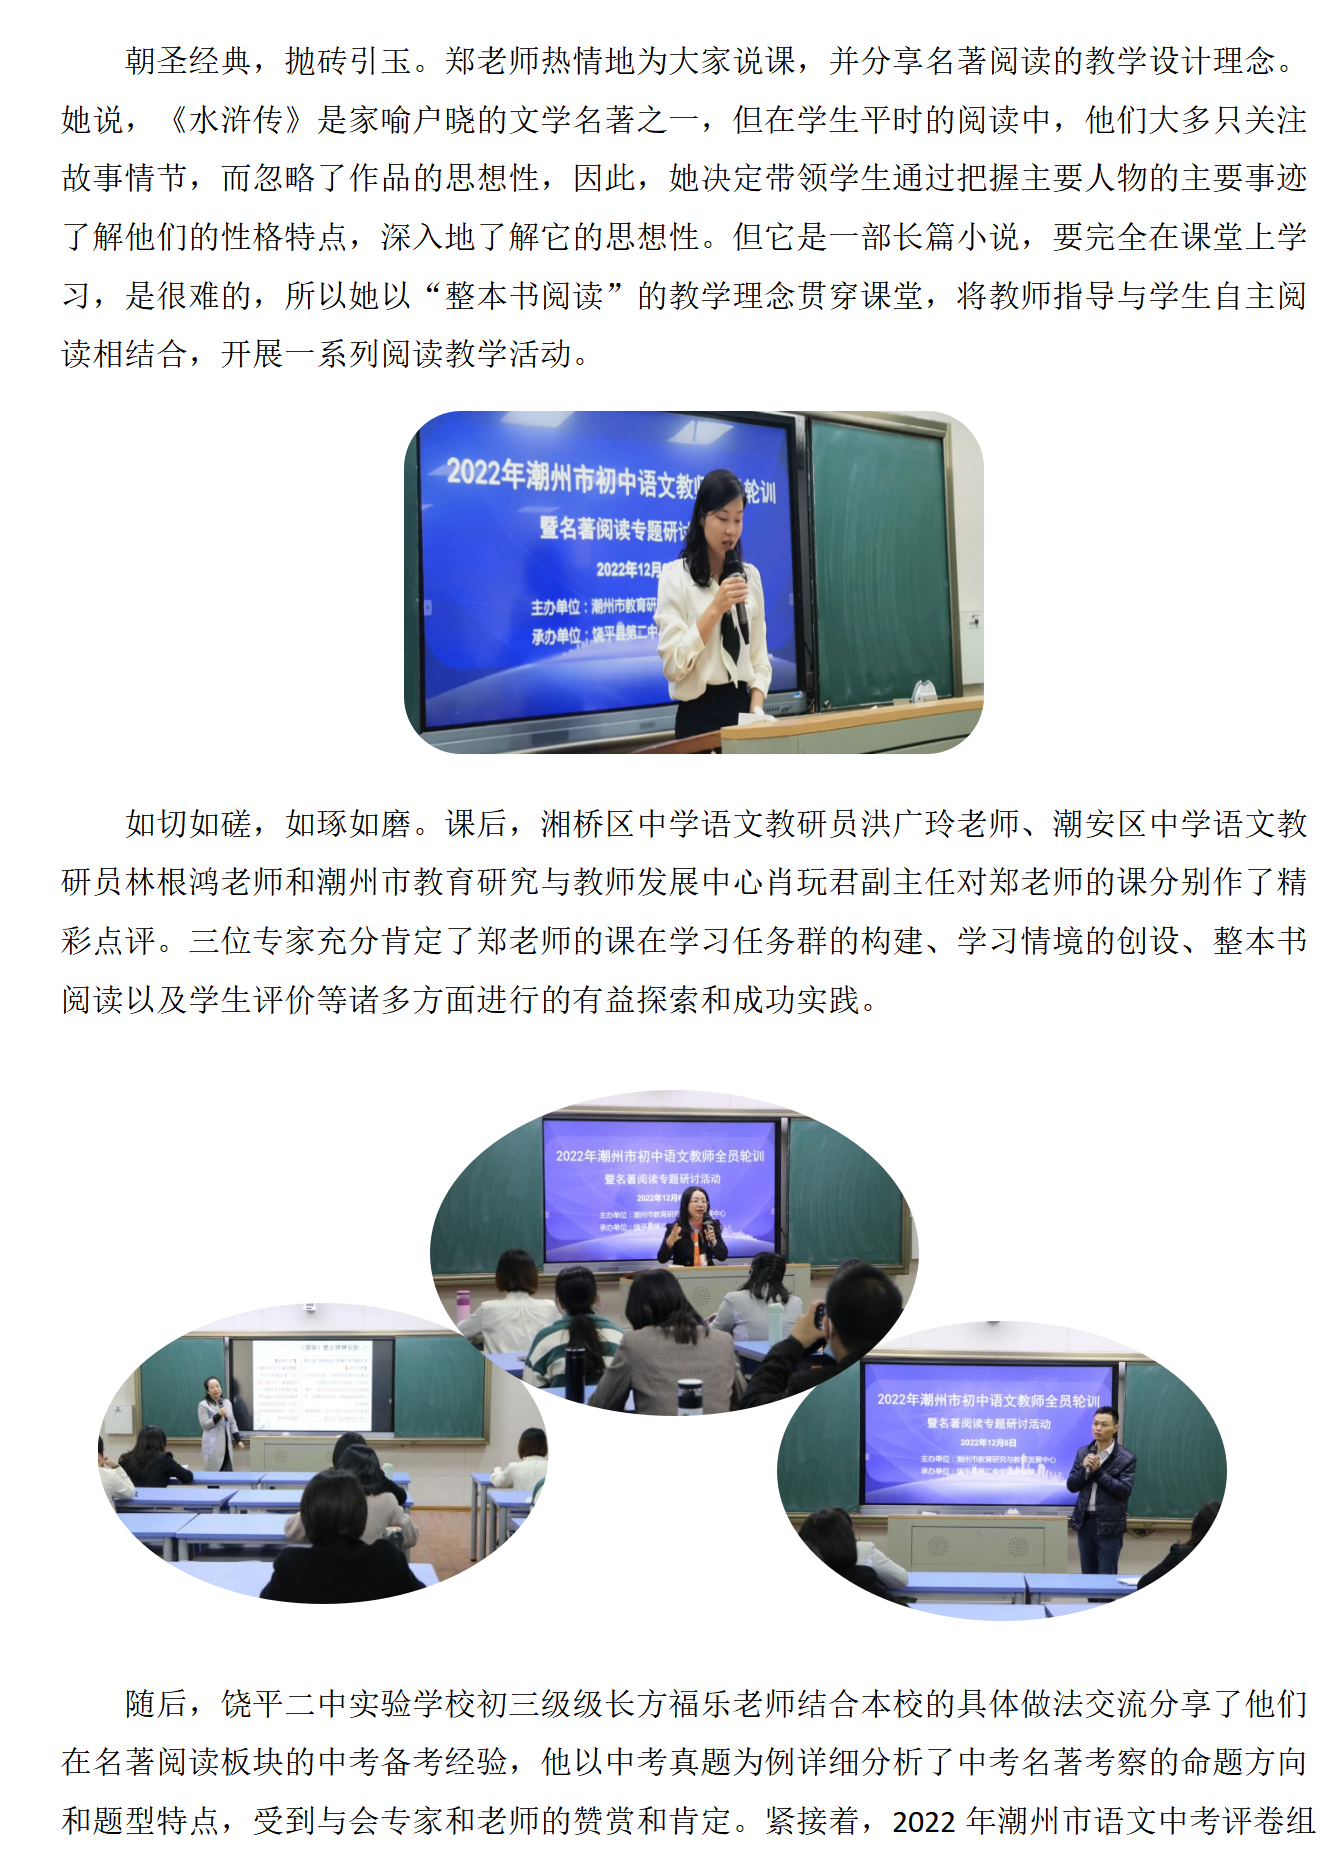 2022年潮州市初中语文教师全员轮训暨名著阅读专题研讨活动_03.png